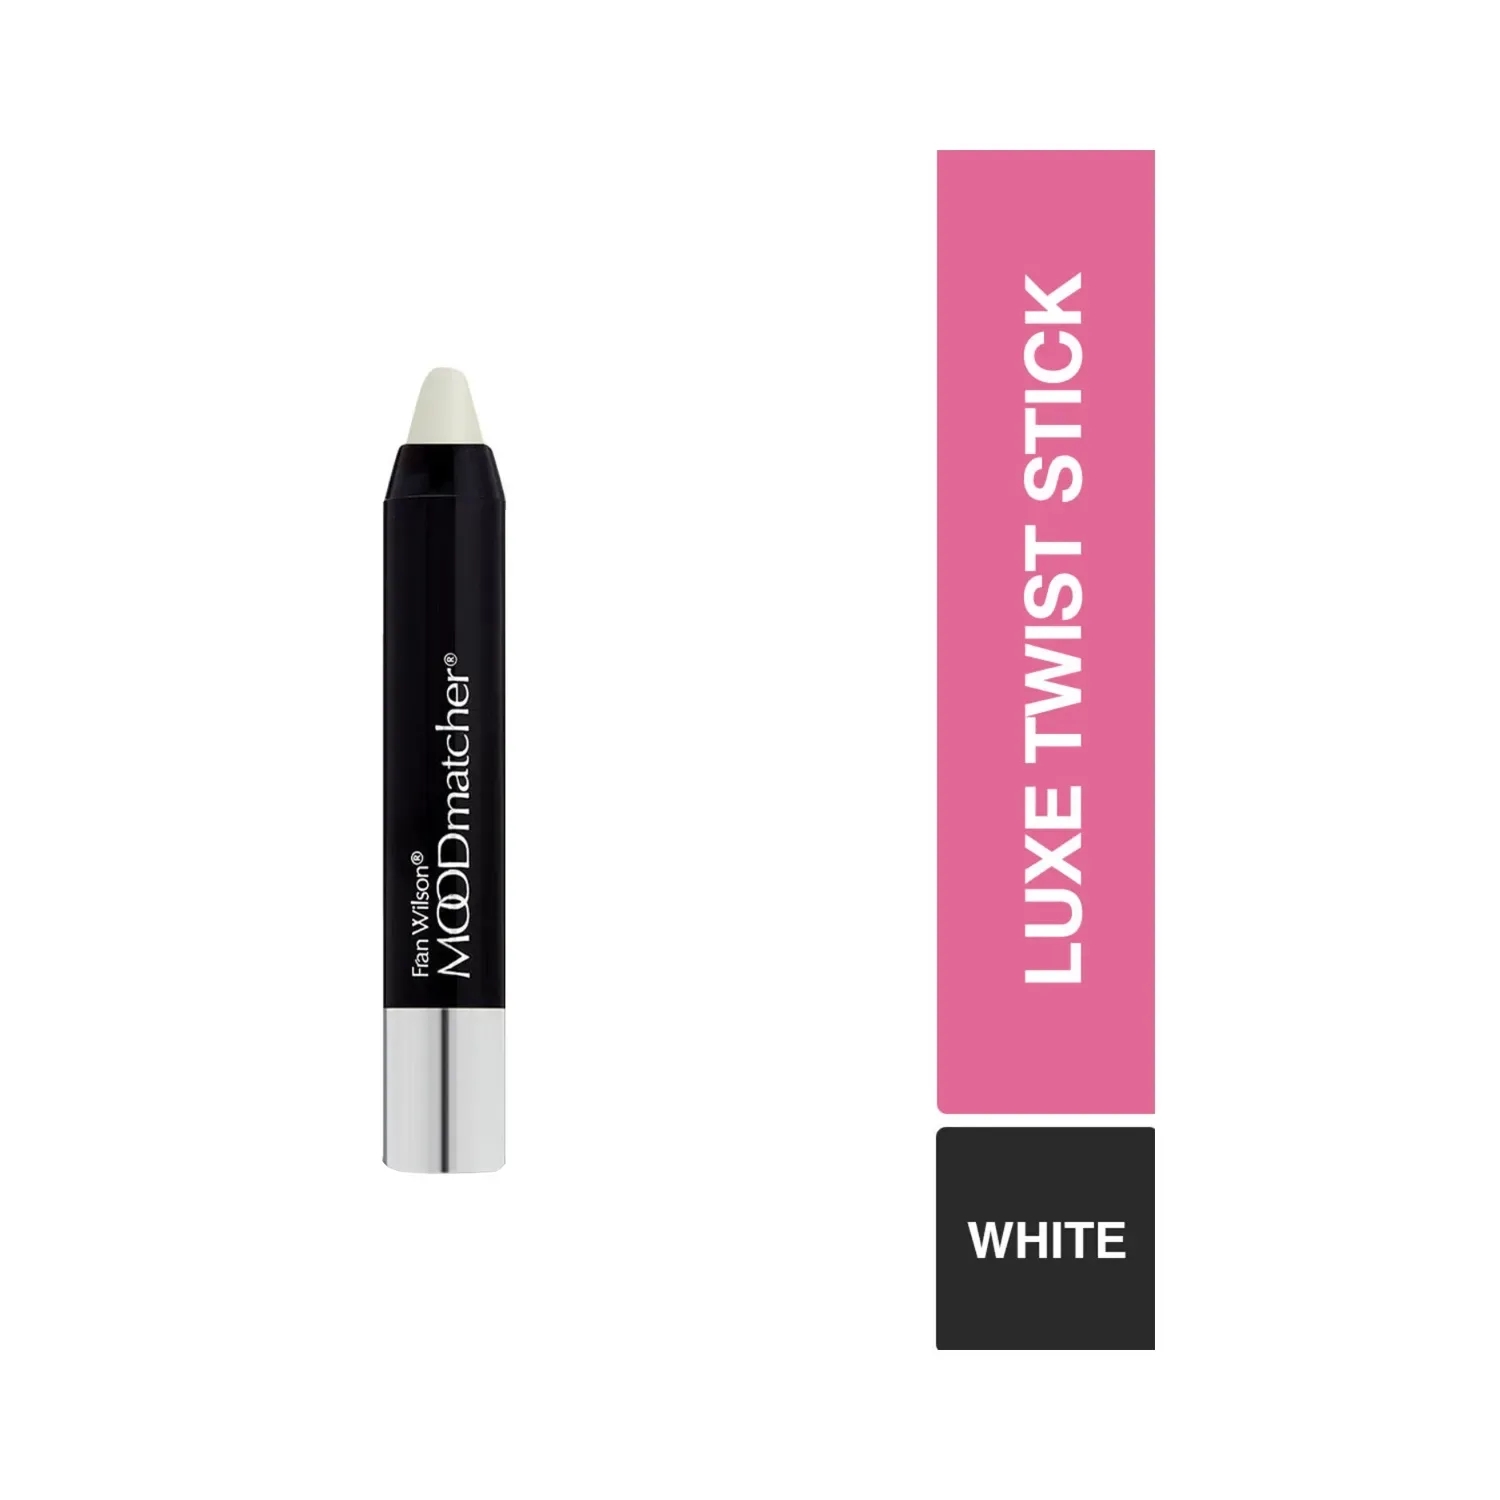 Fran Wilson Moodmatcher Luxe Twist Stick - White (2.9g)